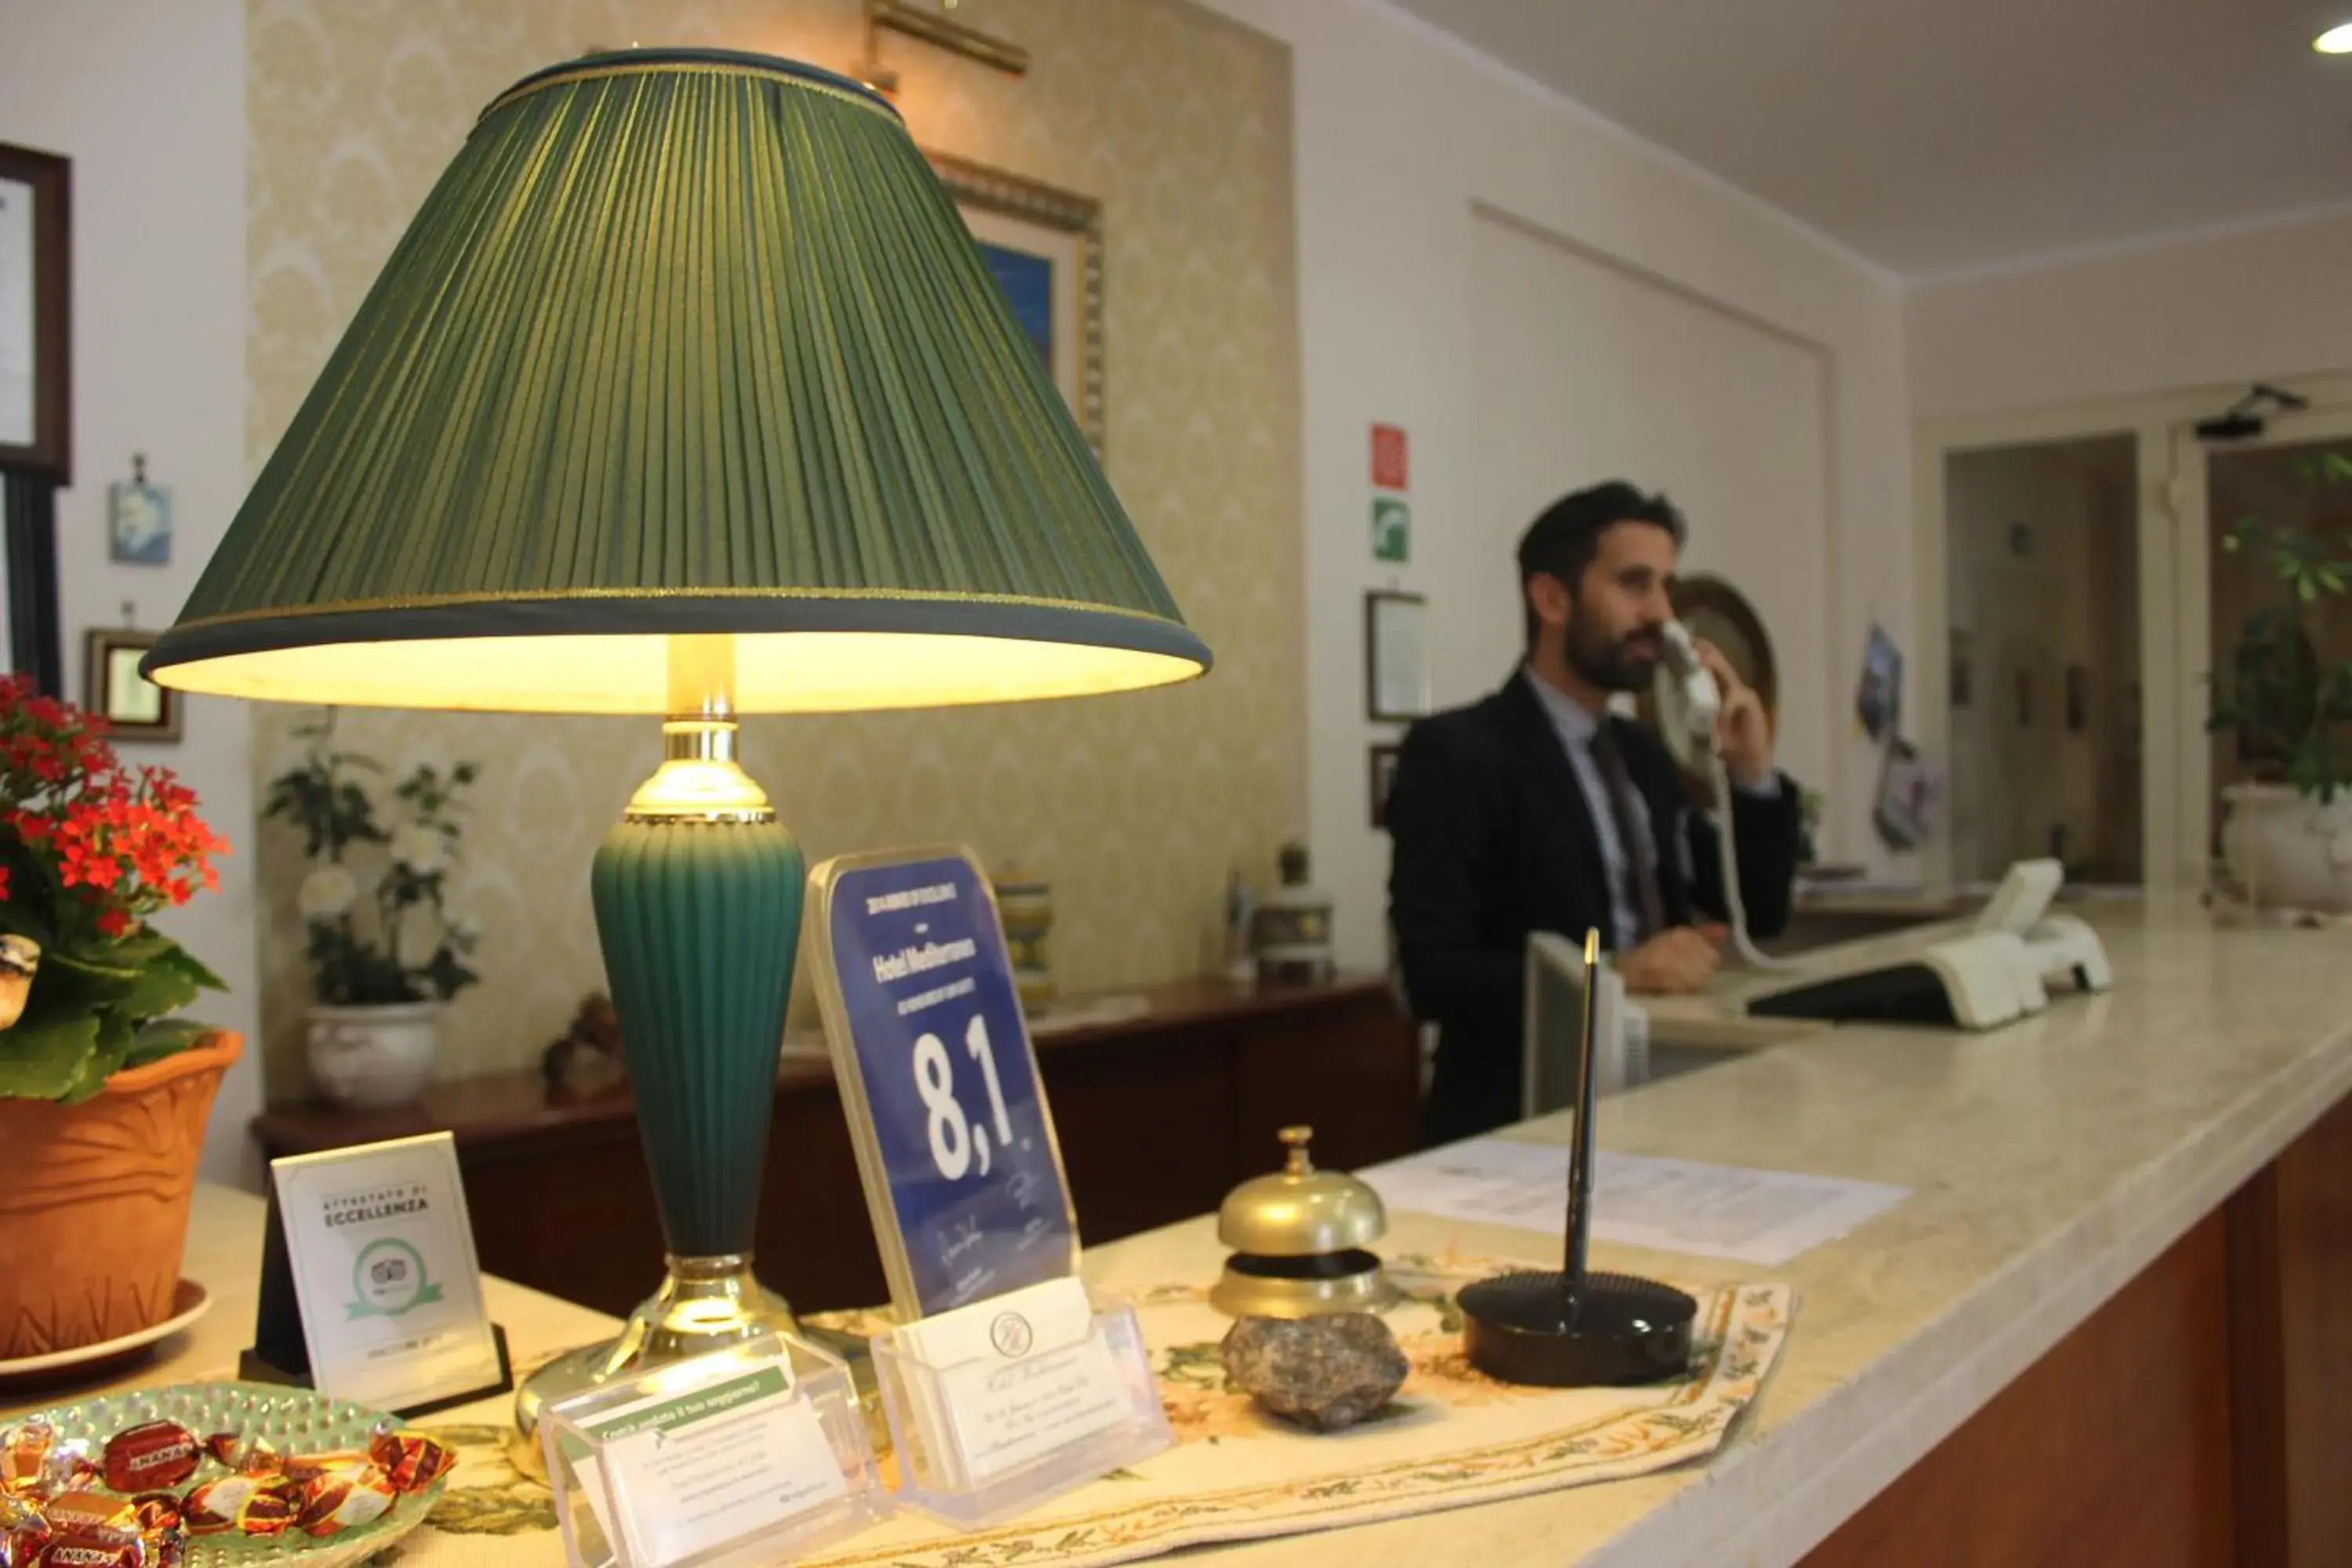 Staff in Hotel Mediterraneo